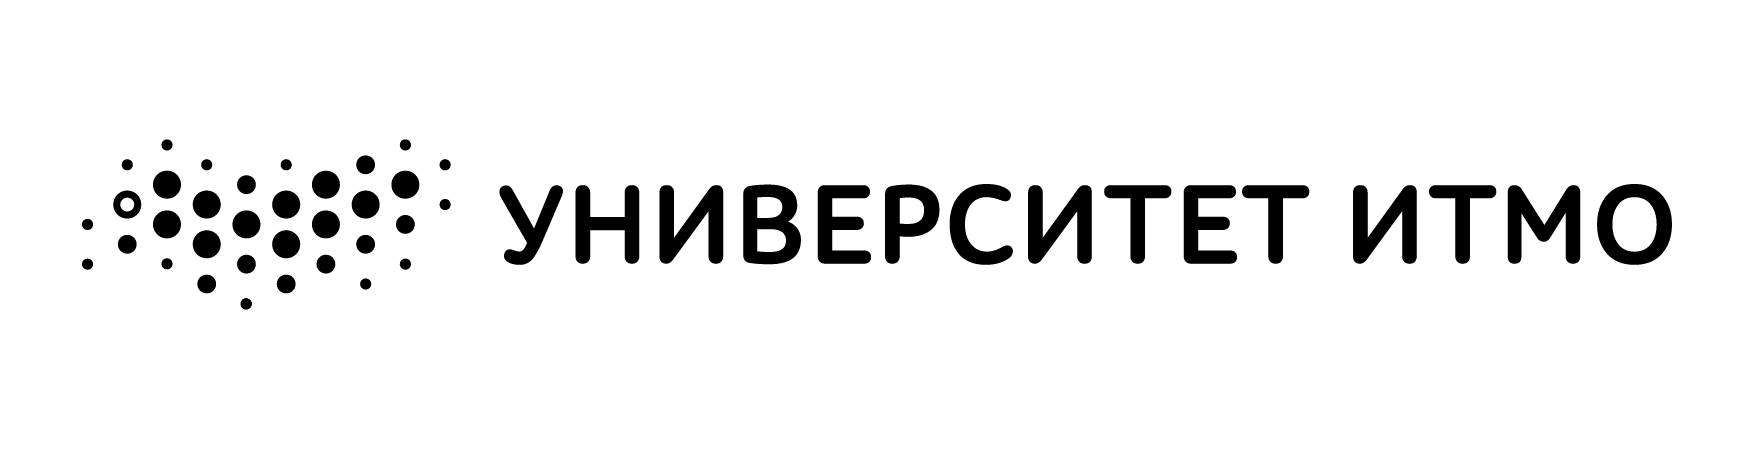 ИТМО лого